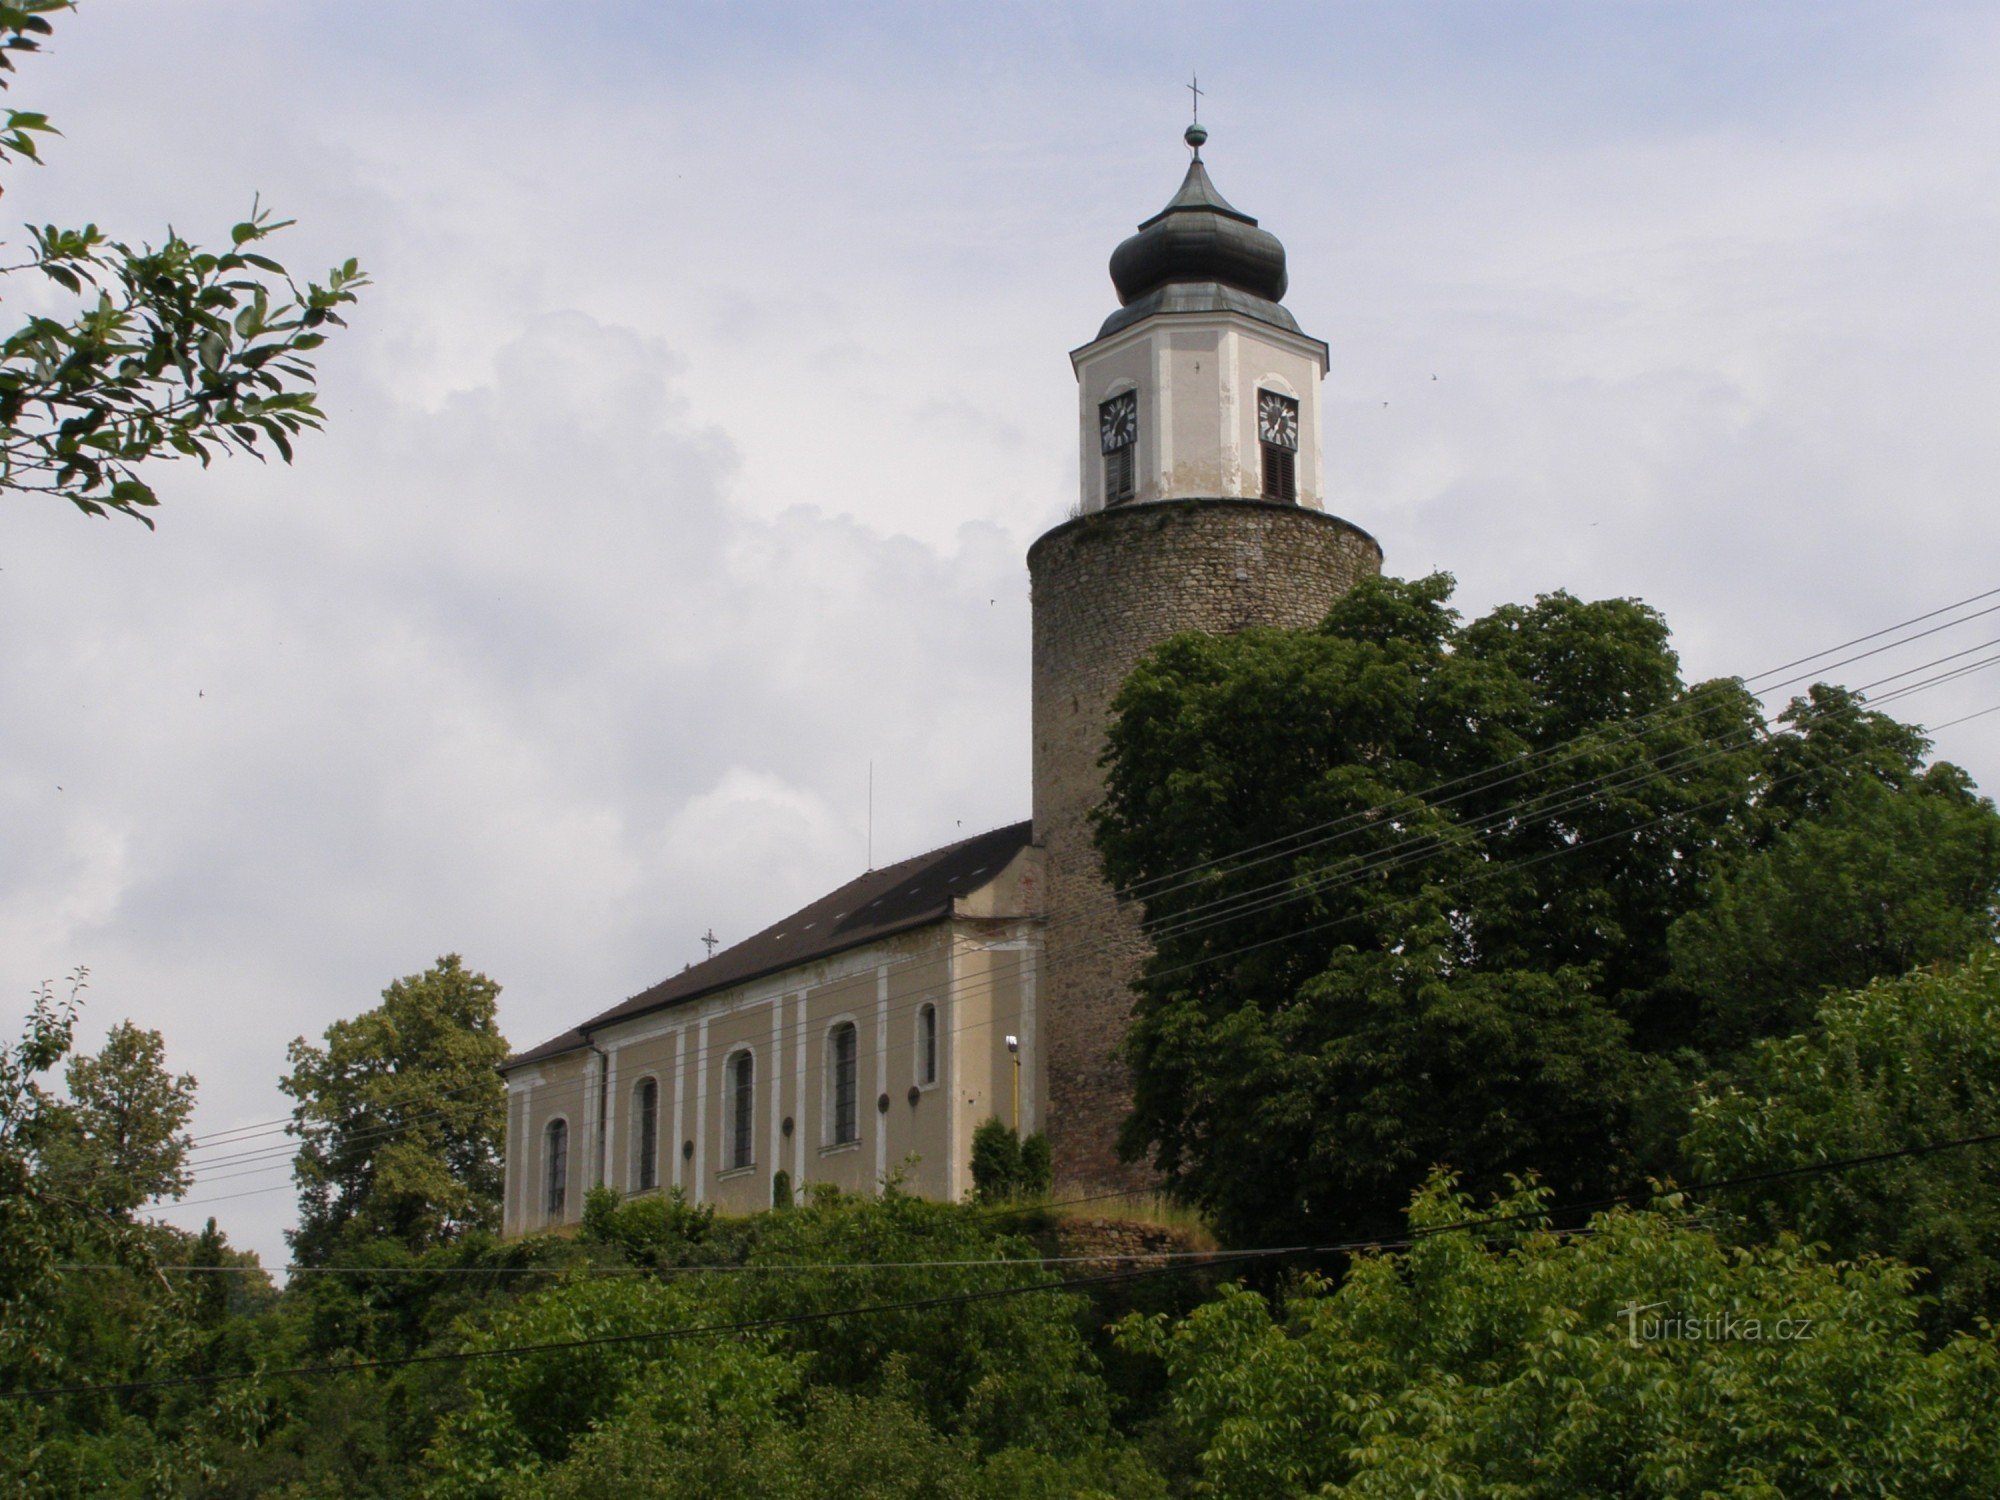 Žulová - Church of St. Joseph with the castle tower